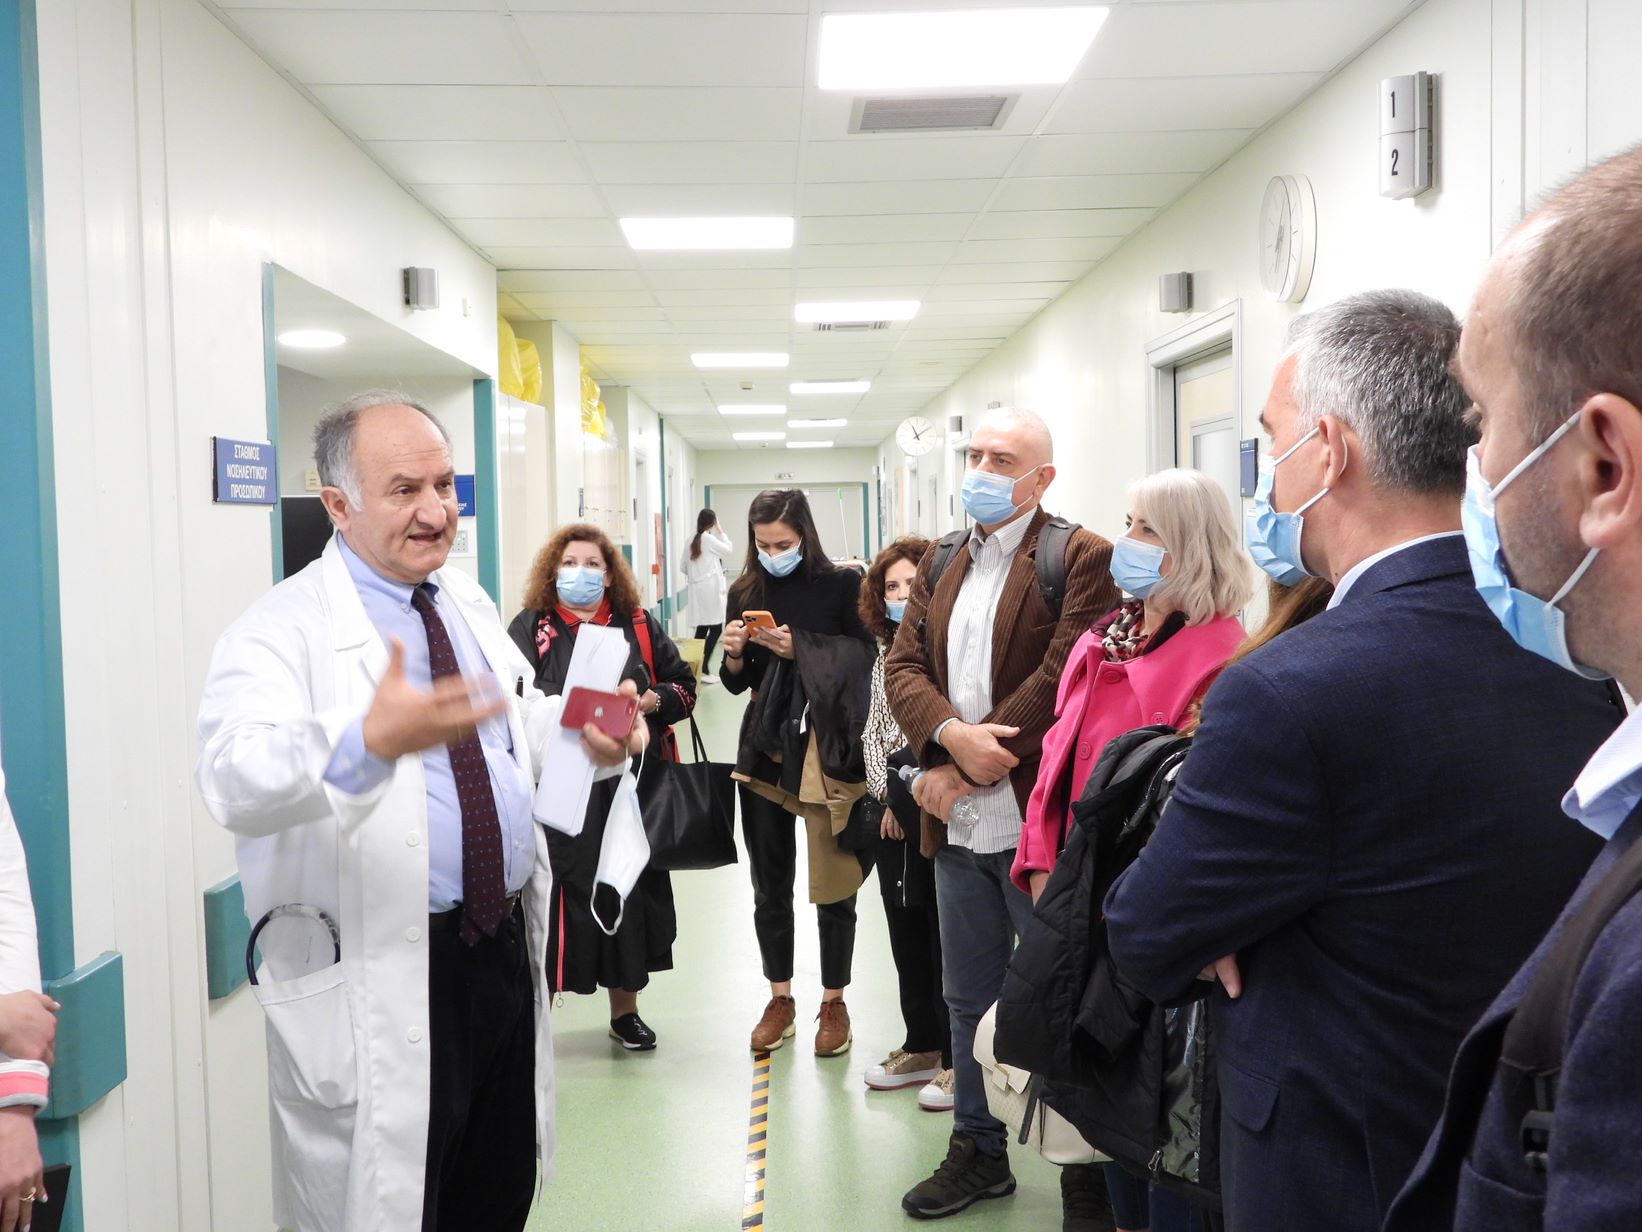 Ενίσχυση της Συνεργασίας για την Ποιότητα της Υγειονομικής Περίθαλψης: Τεχνική αντιπροσωπεία της Αλβανίας επισκέπτεται Μονάδες Υγείας στην Ελλάδα